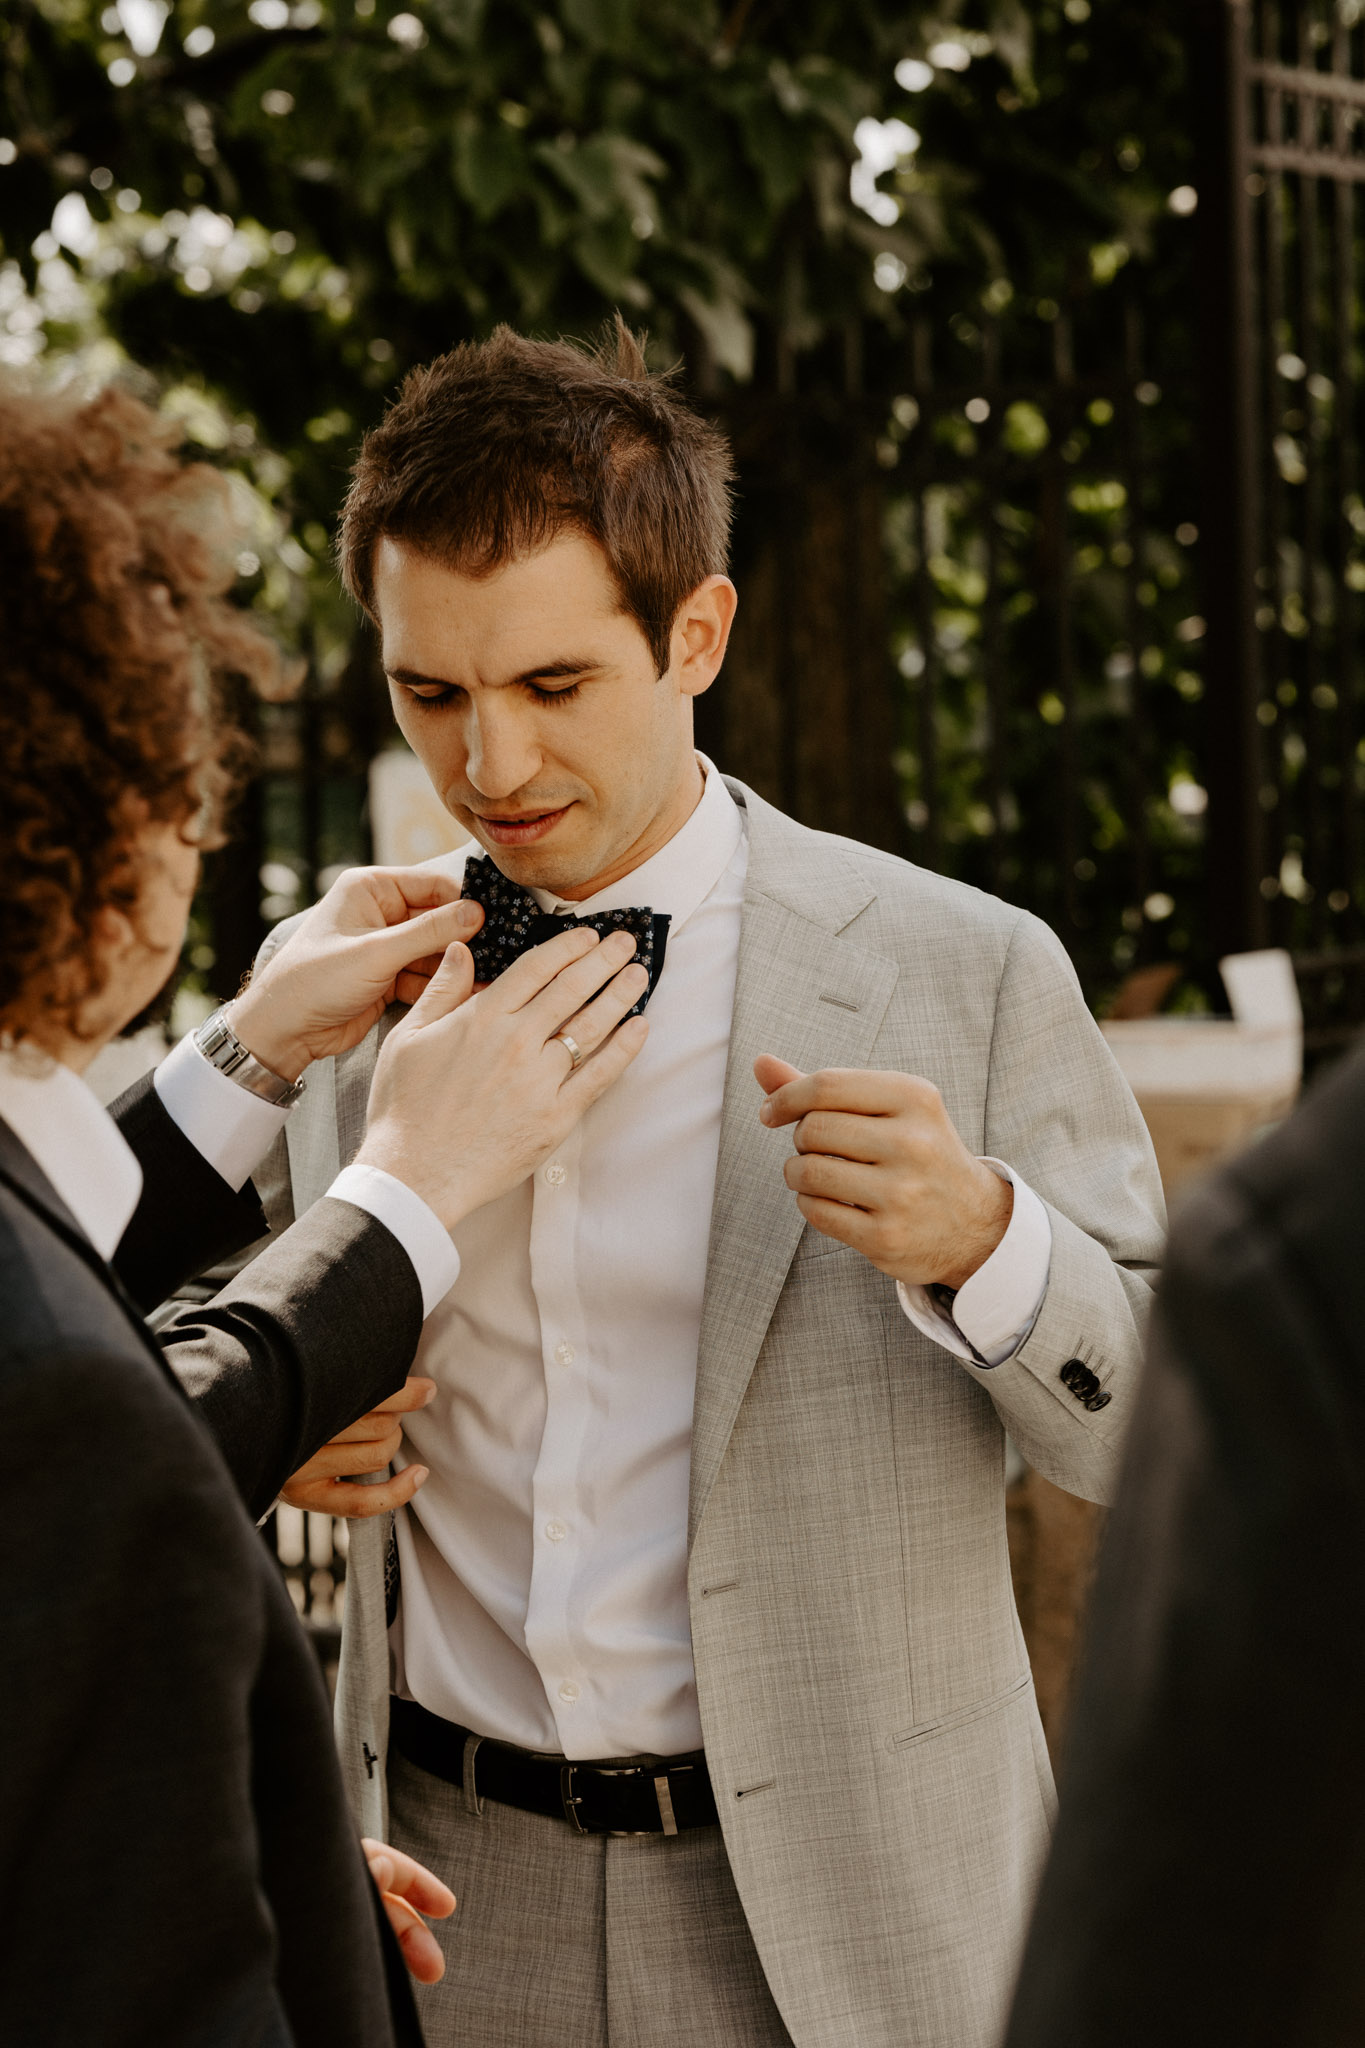 groomsmen adjusting grooms tie